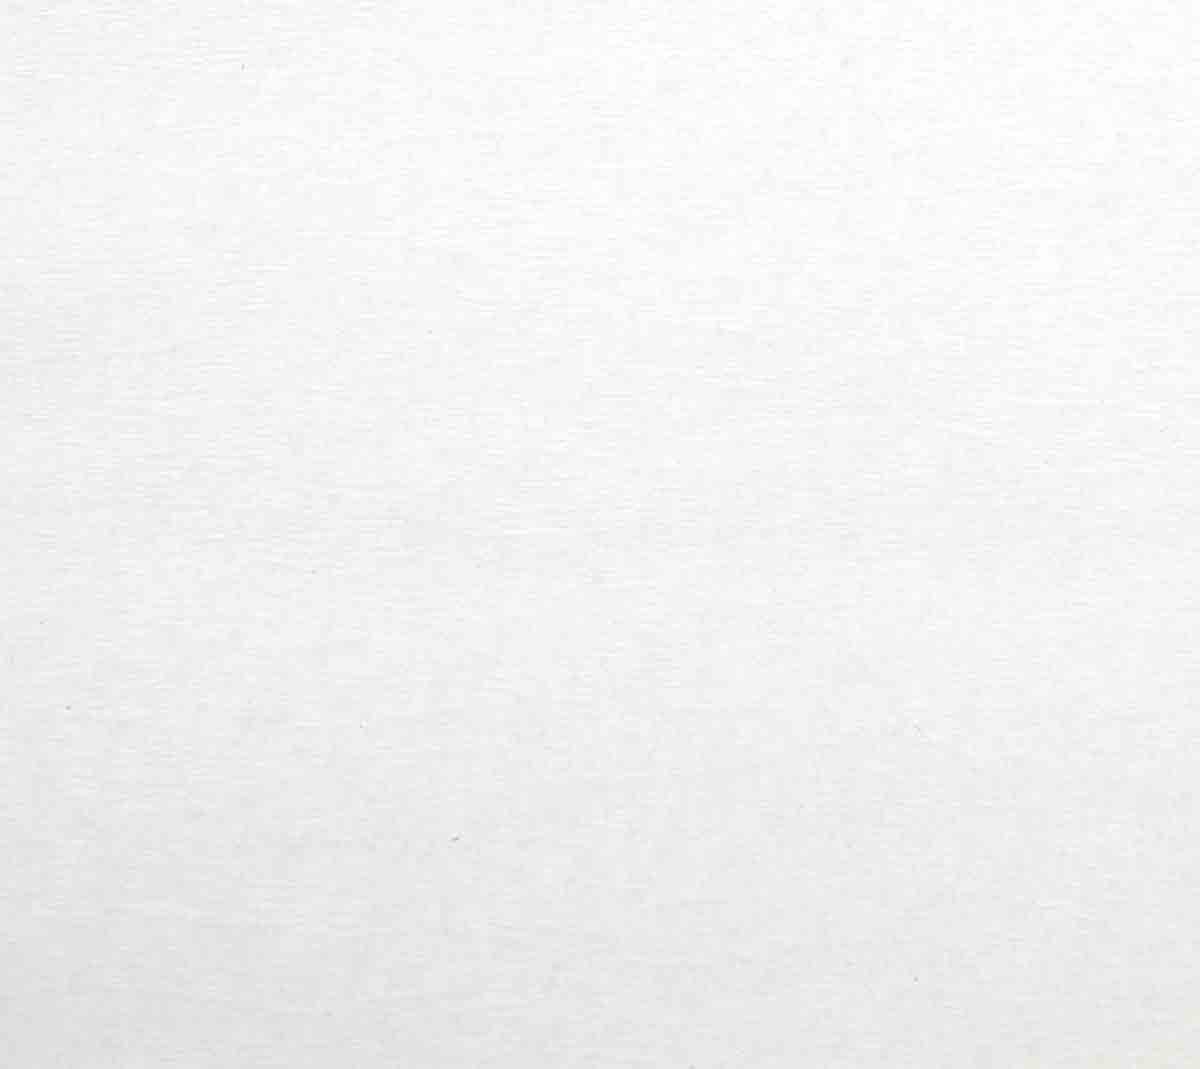 Papier Crépon blanc feuille 50x200 cm - MegaCrea DIY référence 4060